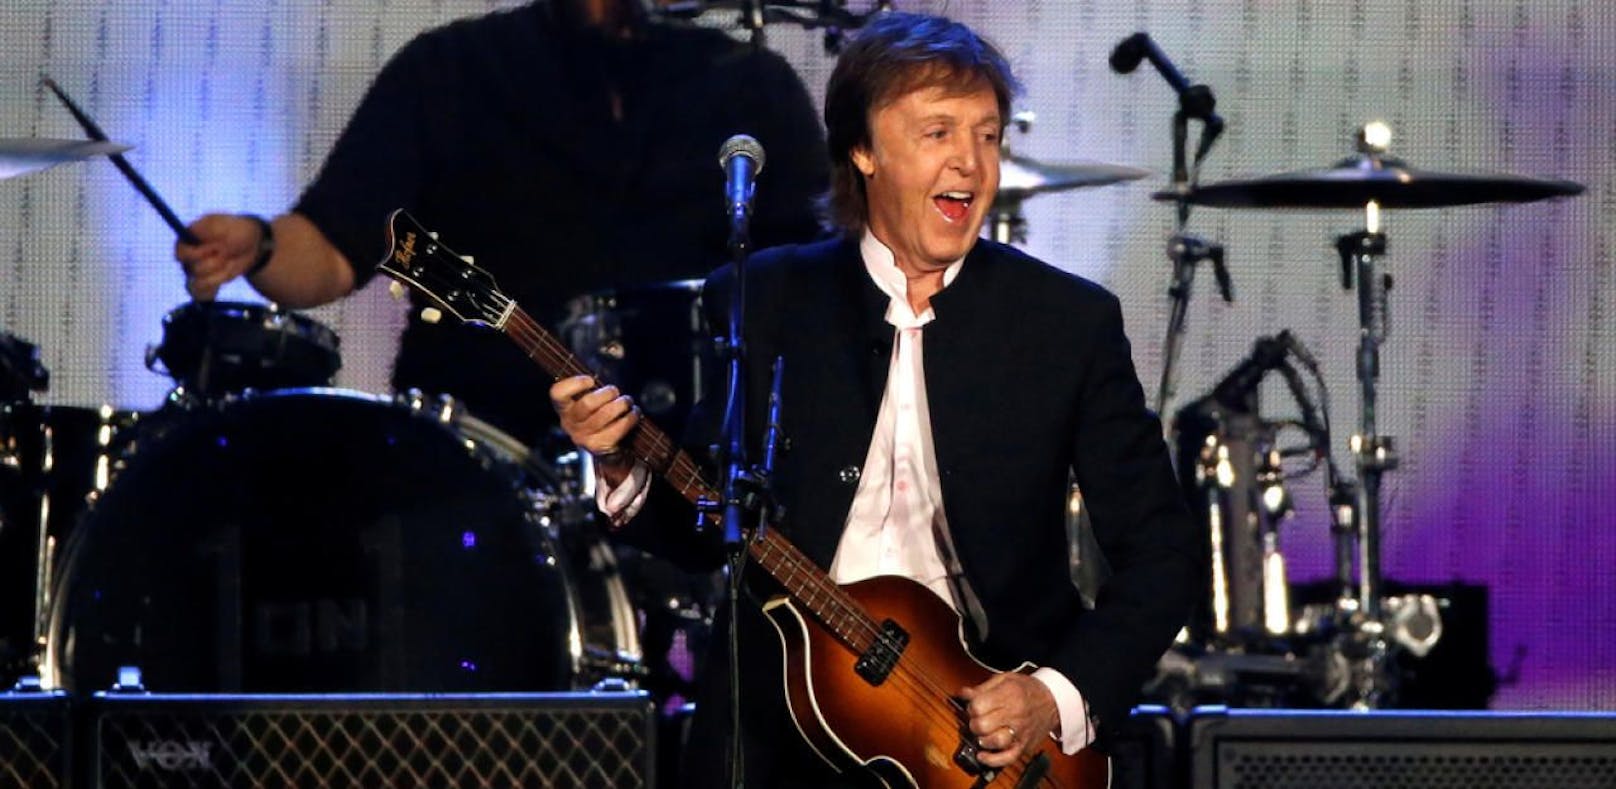 Paul McCartney spielt Zusatzshow in Wien